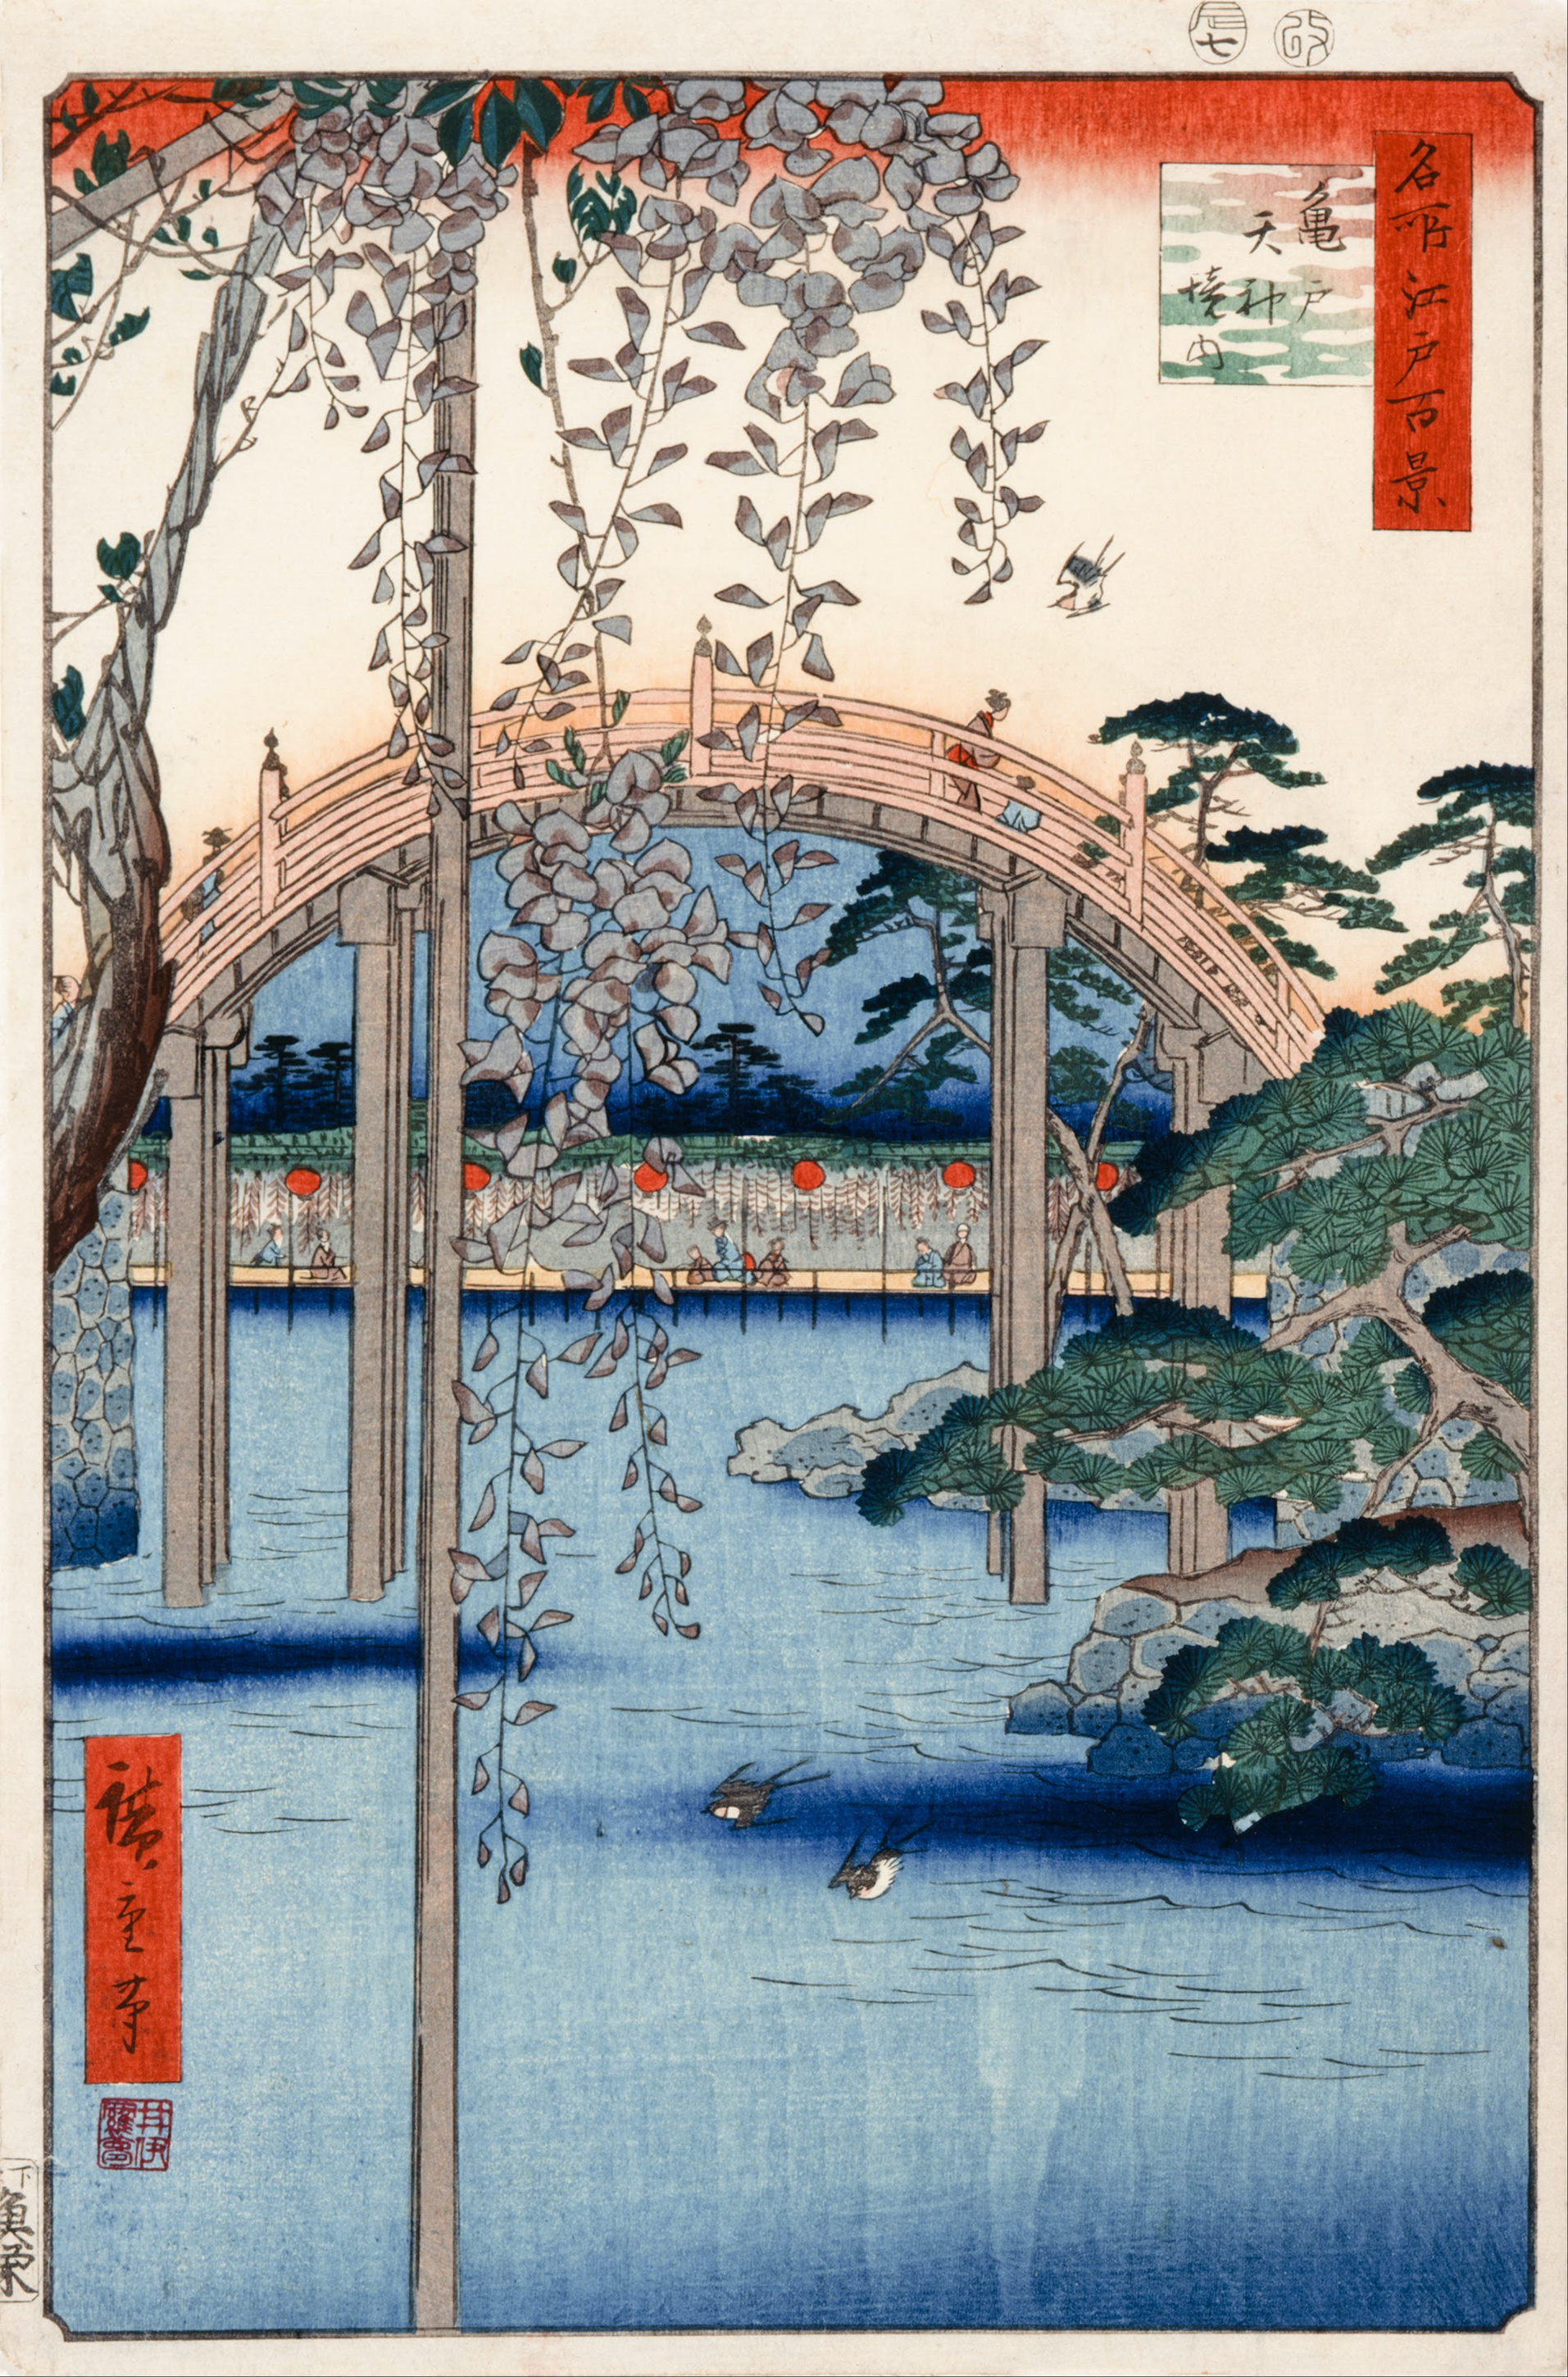 N.º 57, Terreno do Templo Kameido Tenjin by  Hiroshige - 1856 - 34 x 22,9 cm 